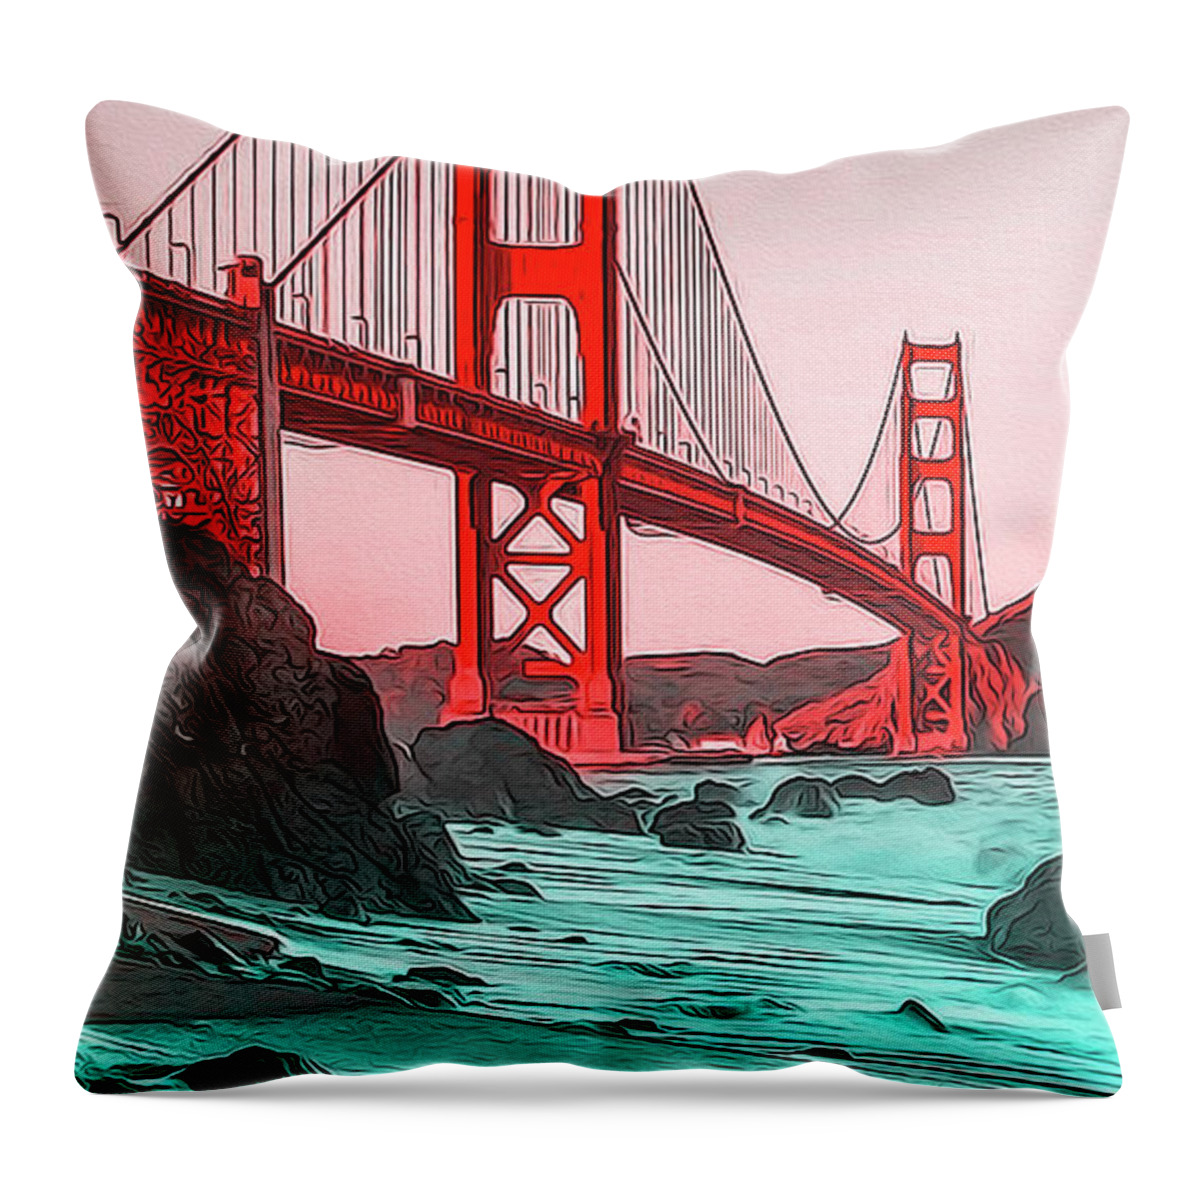 Golden Gate Bridge Throw Pillow featuring the painting Golden Gate Bridge - Panorama by AM FineArtPrints